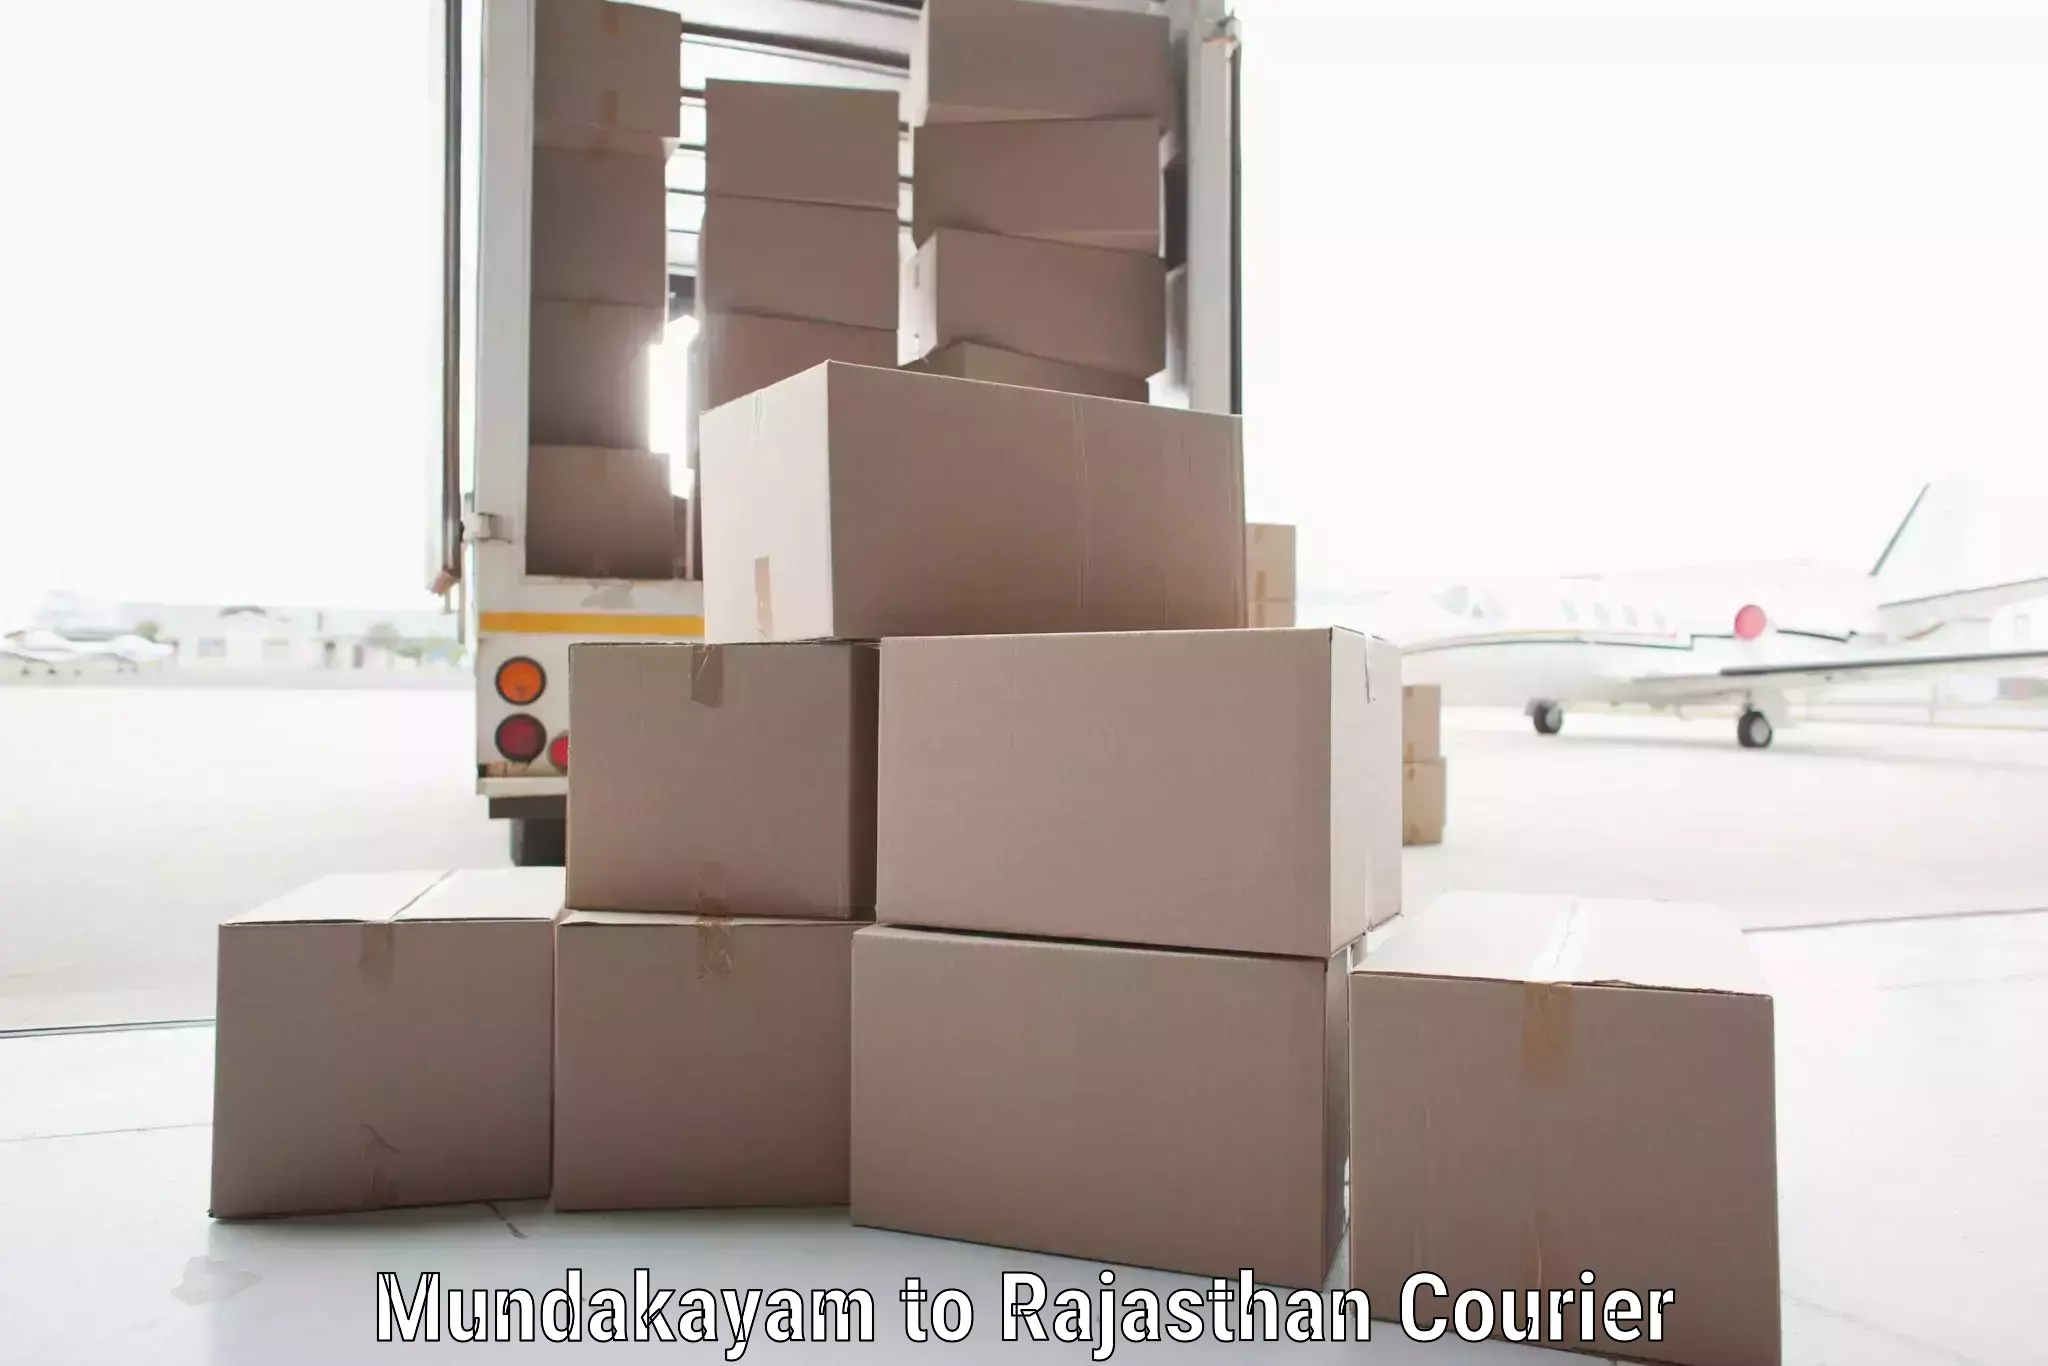 Nationwide shipping capabilities Mundakayam to Bonli